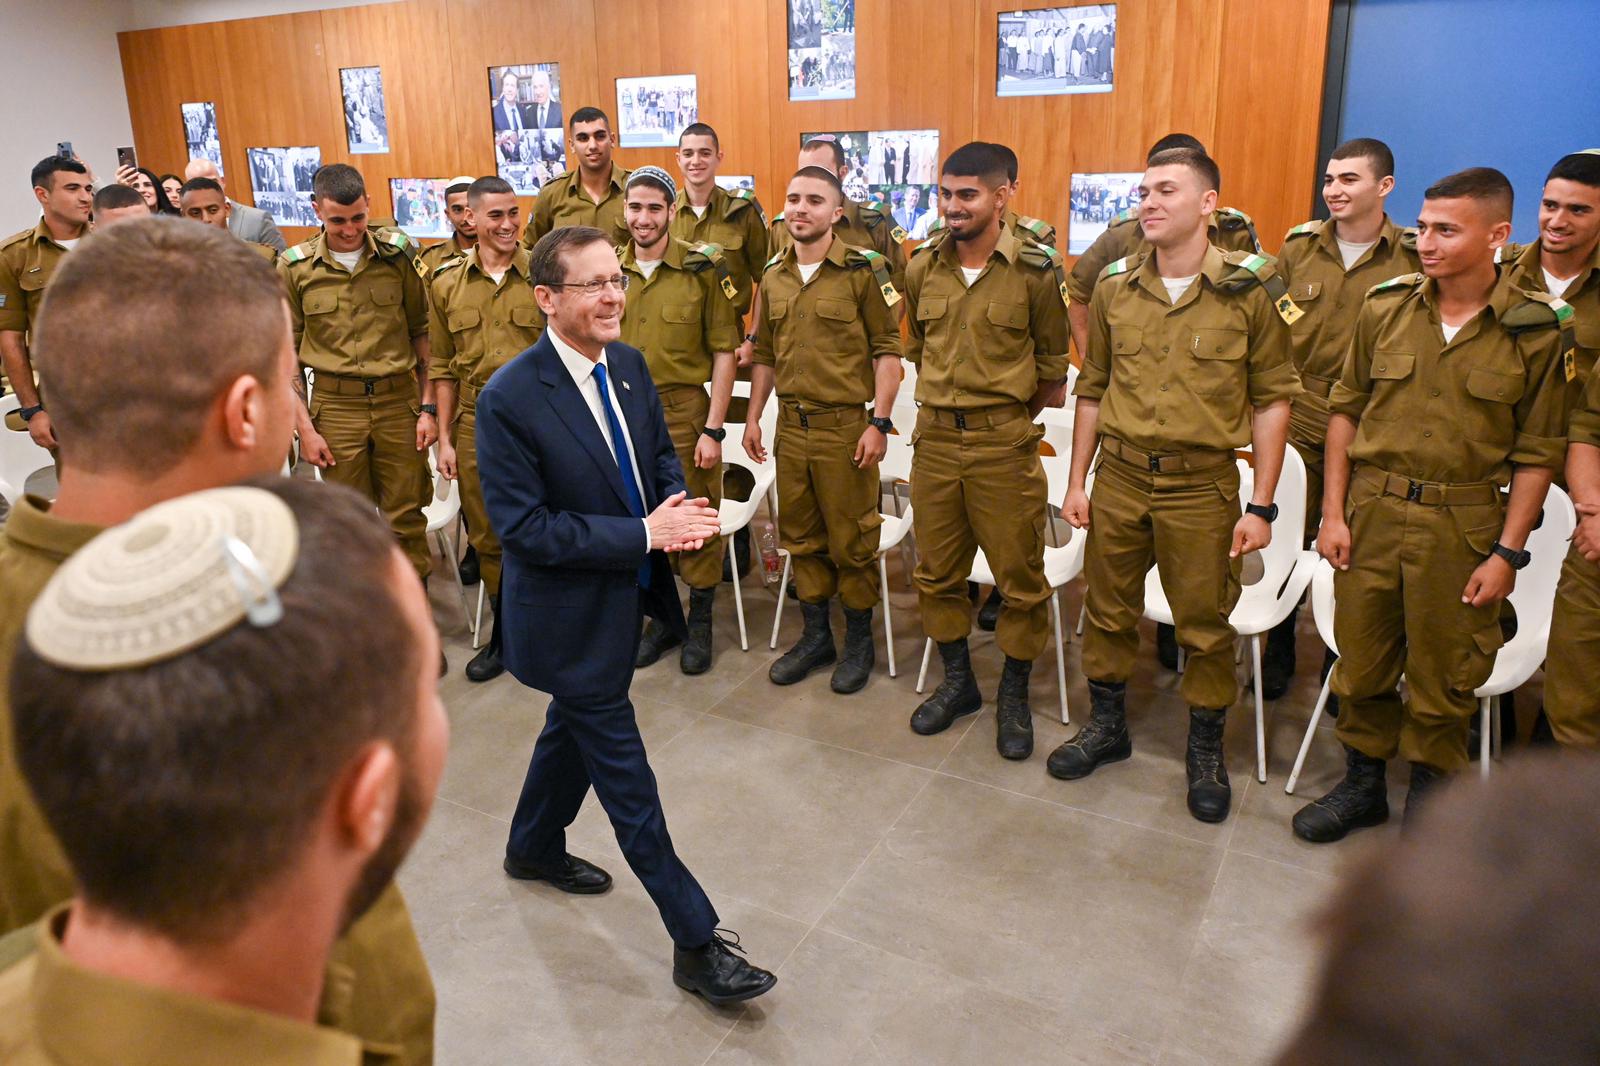 ״אנחנו פה מאוחדים מתחת לאלונקה״ – נשיא המדינה הזמין את ׳צוות עמרי׳ מחטיבת גולני לשיחה בבית הנשיא